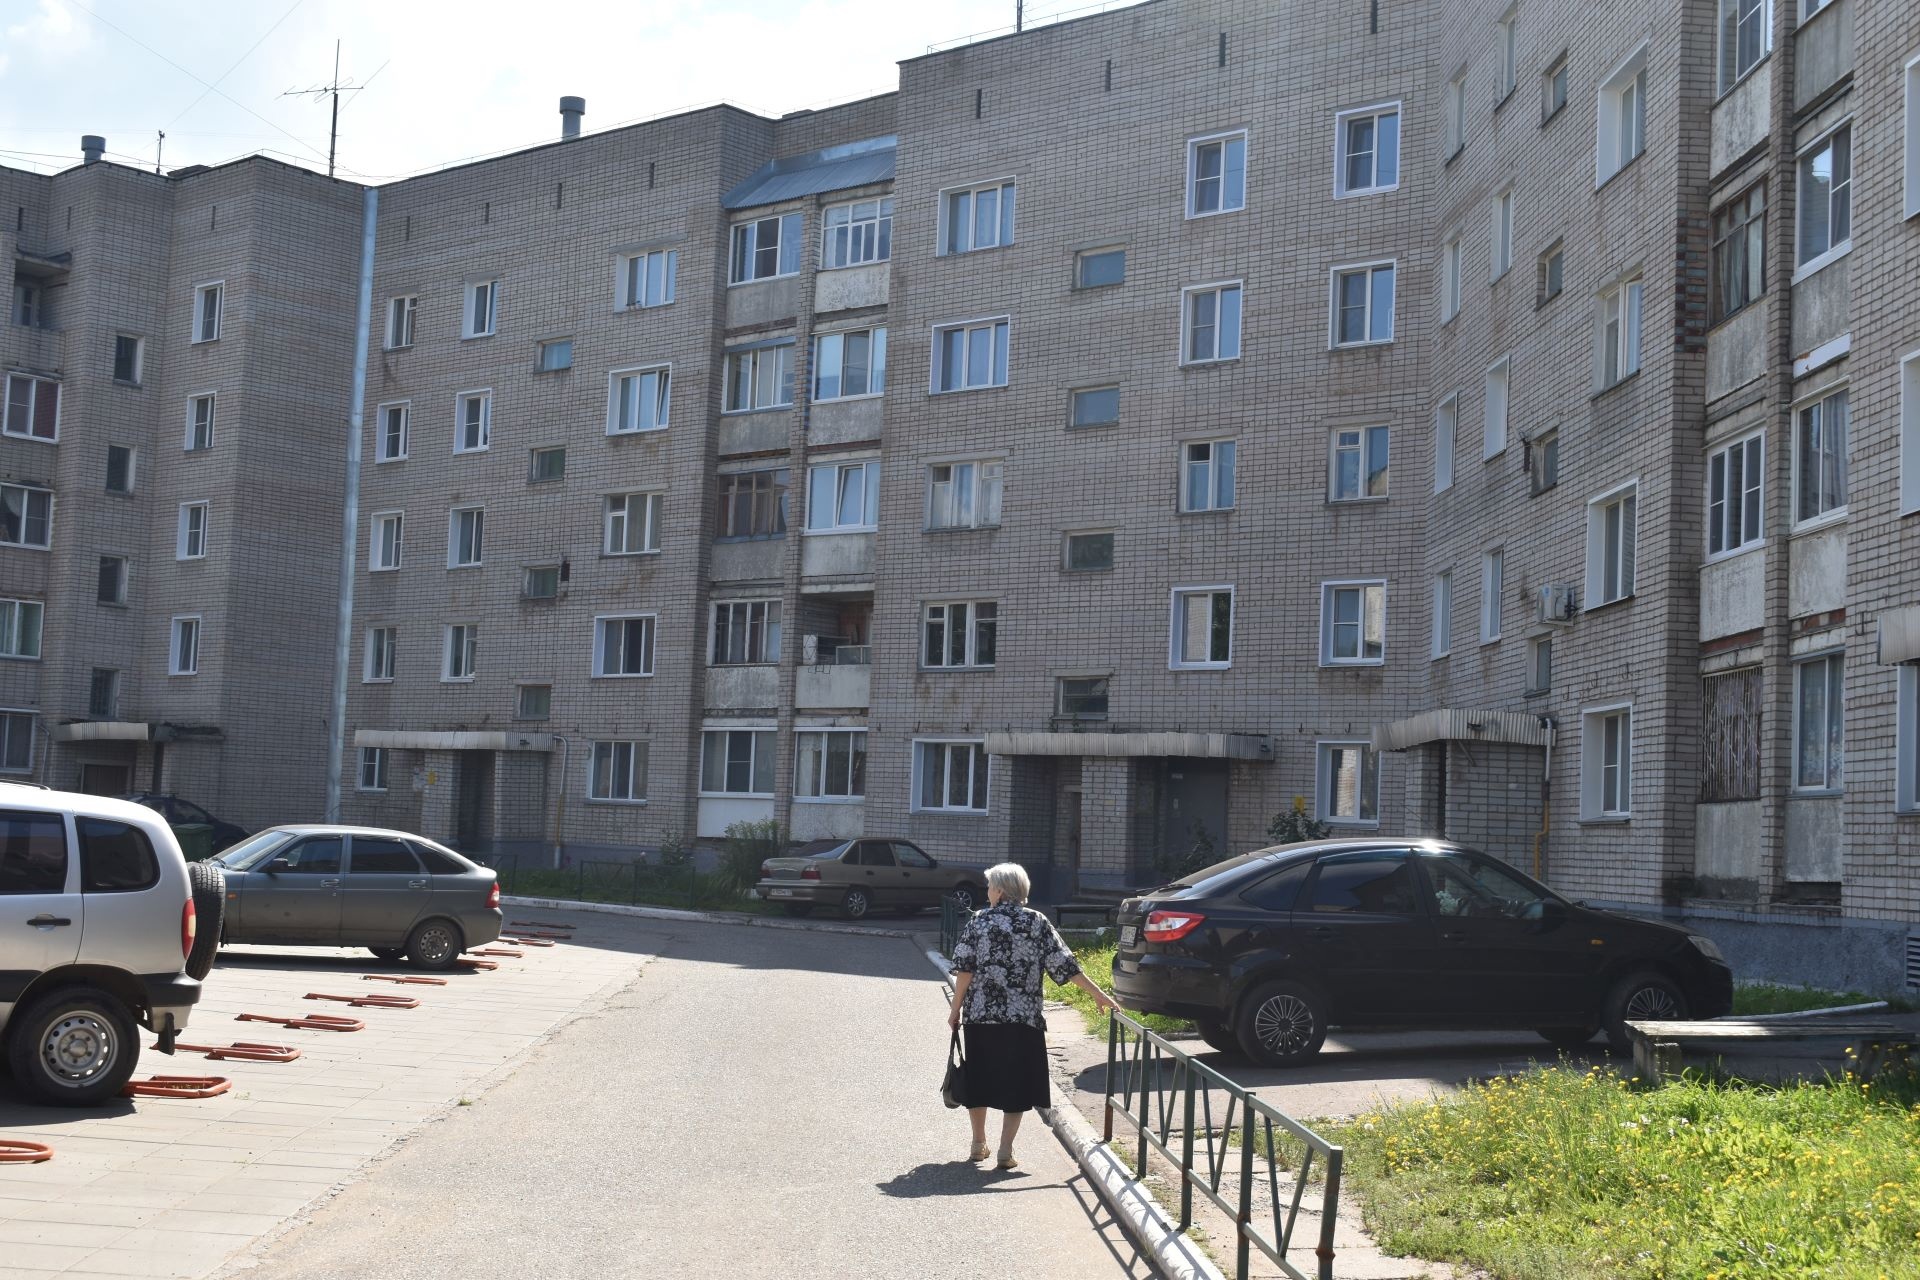 Кировская область оказалась на 61 месте в рейтинге регионов РФ по вводу жилья